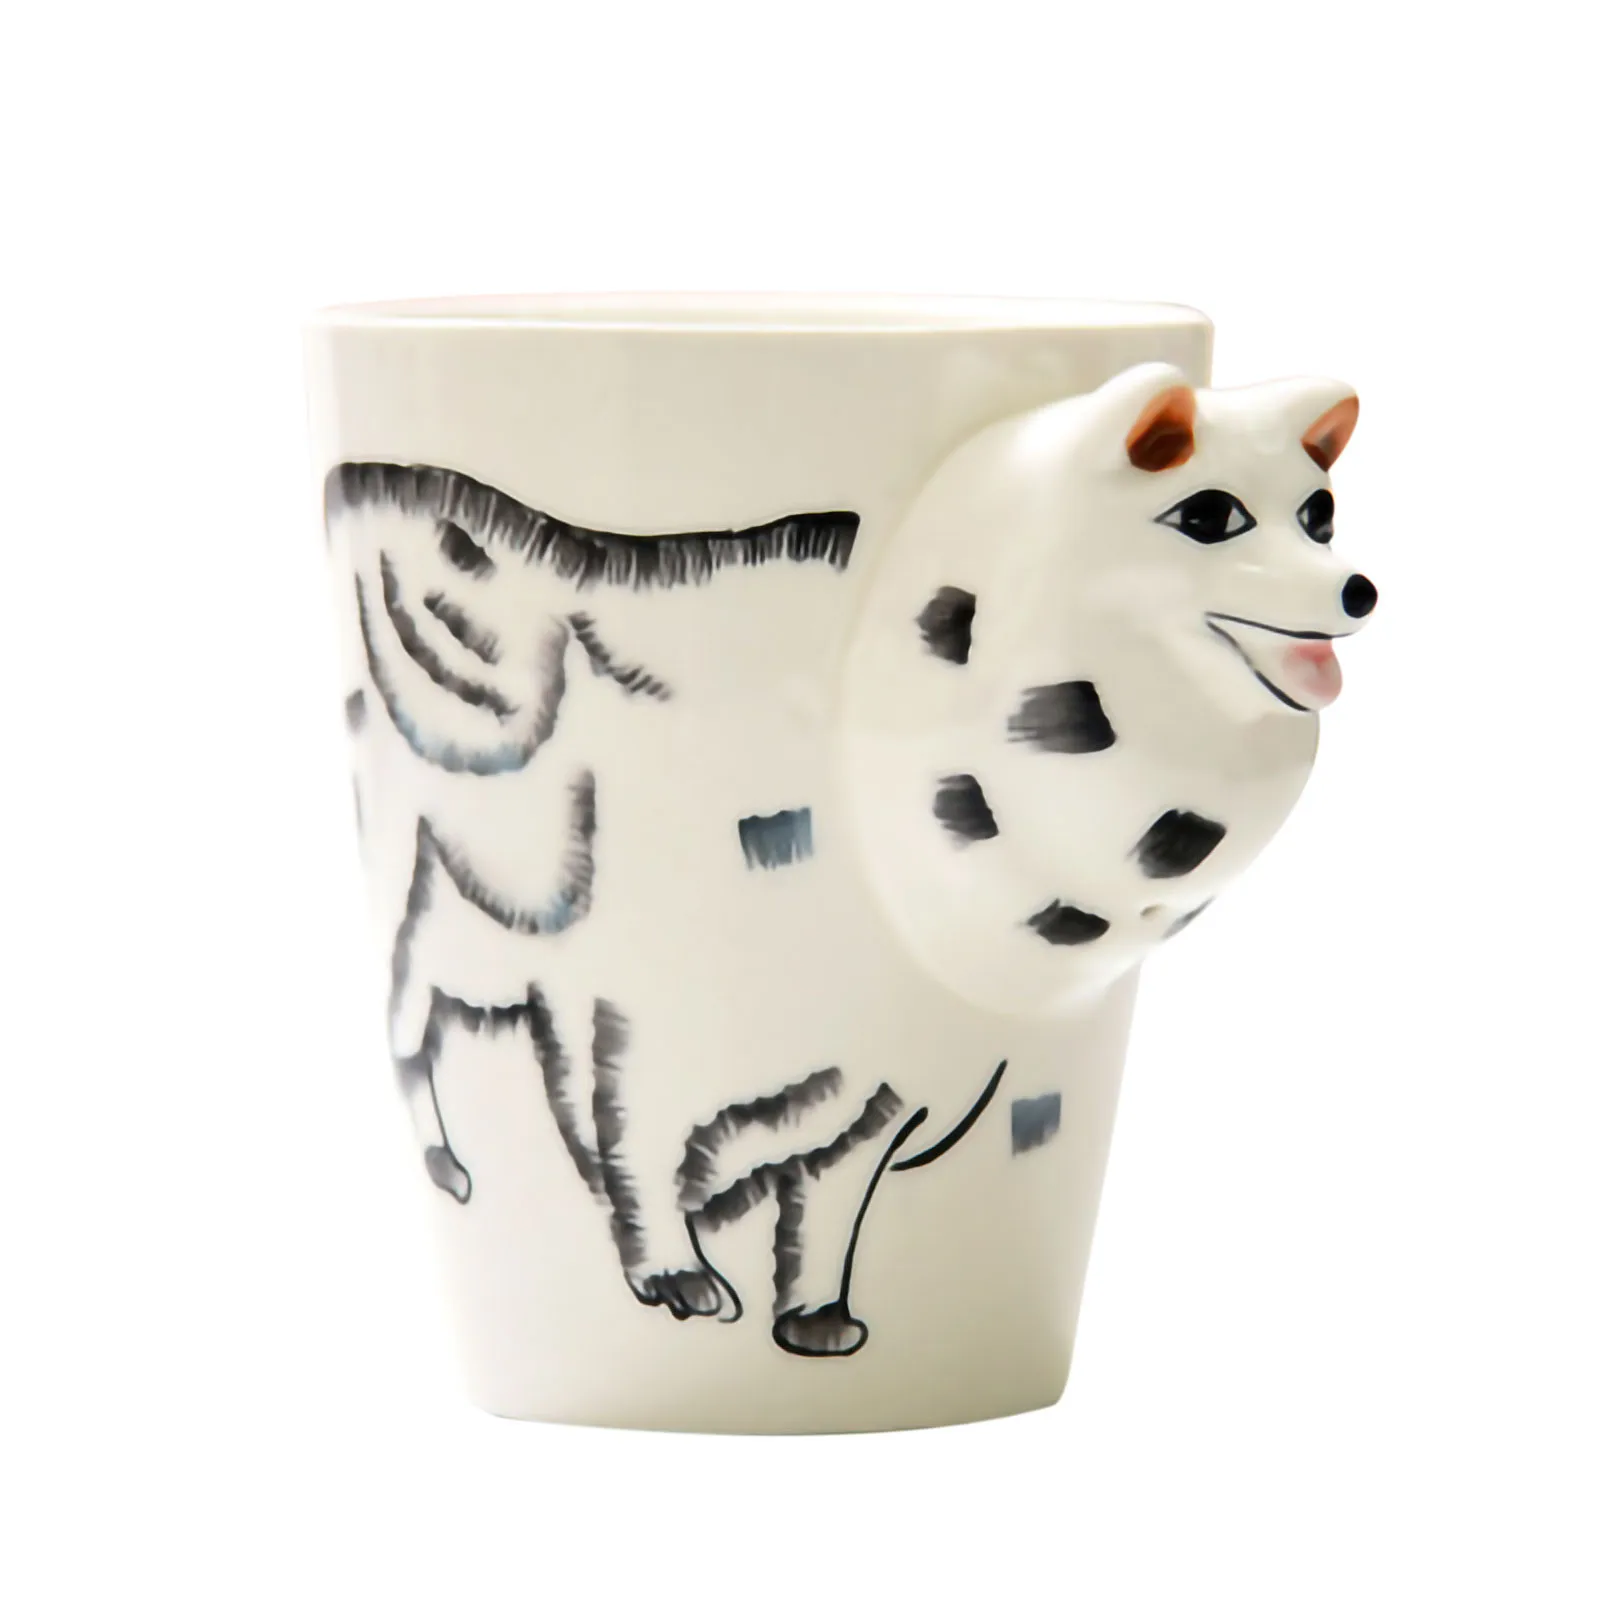 Niedliches Tier Keramik Tasse Kreativ Handbemalt 3D Becher Mit Griff Kaffee Tee